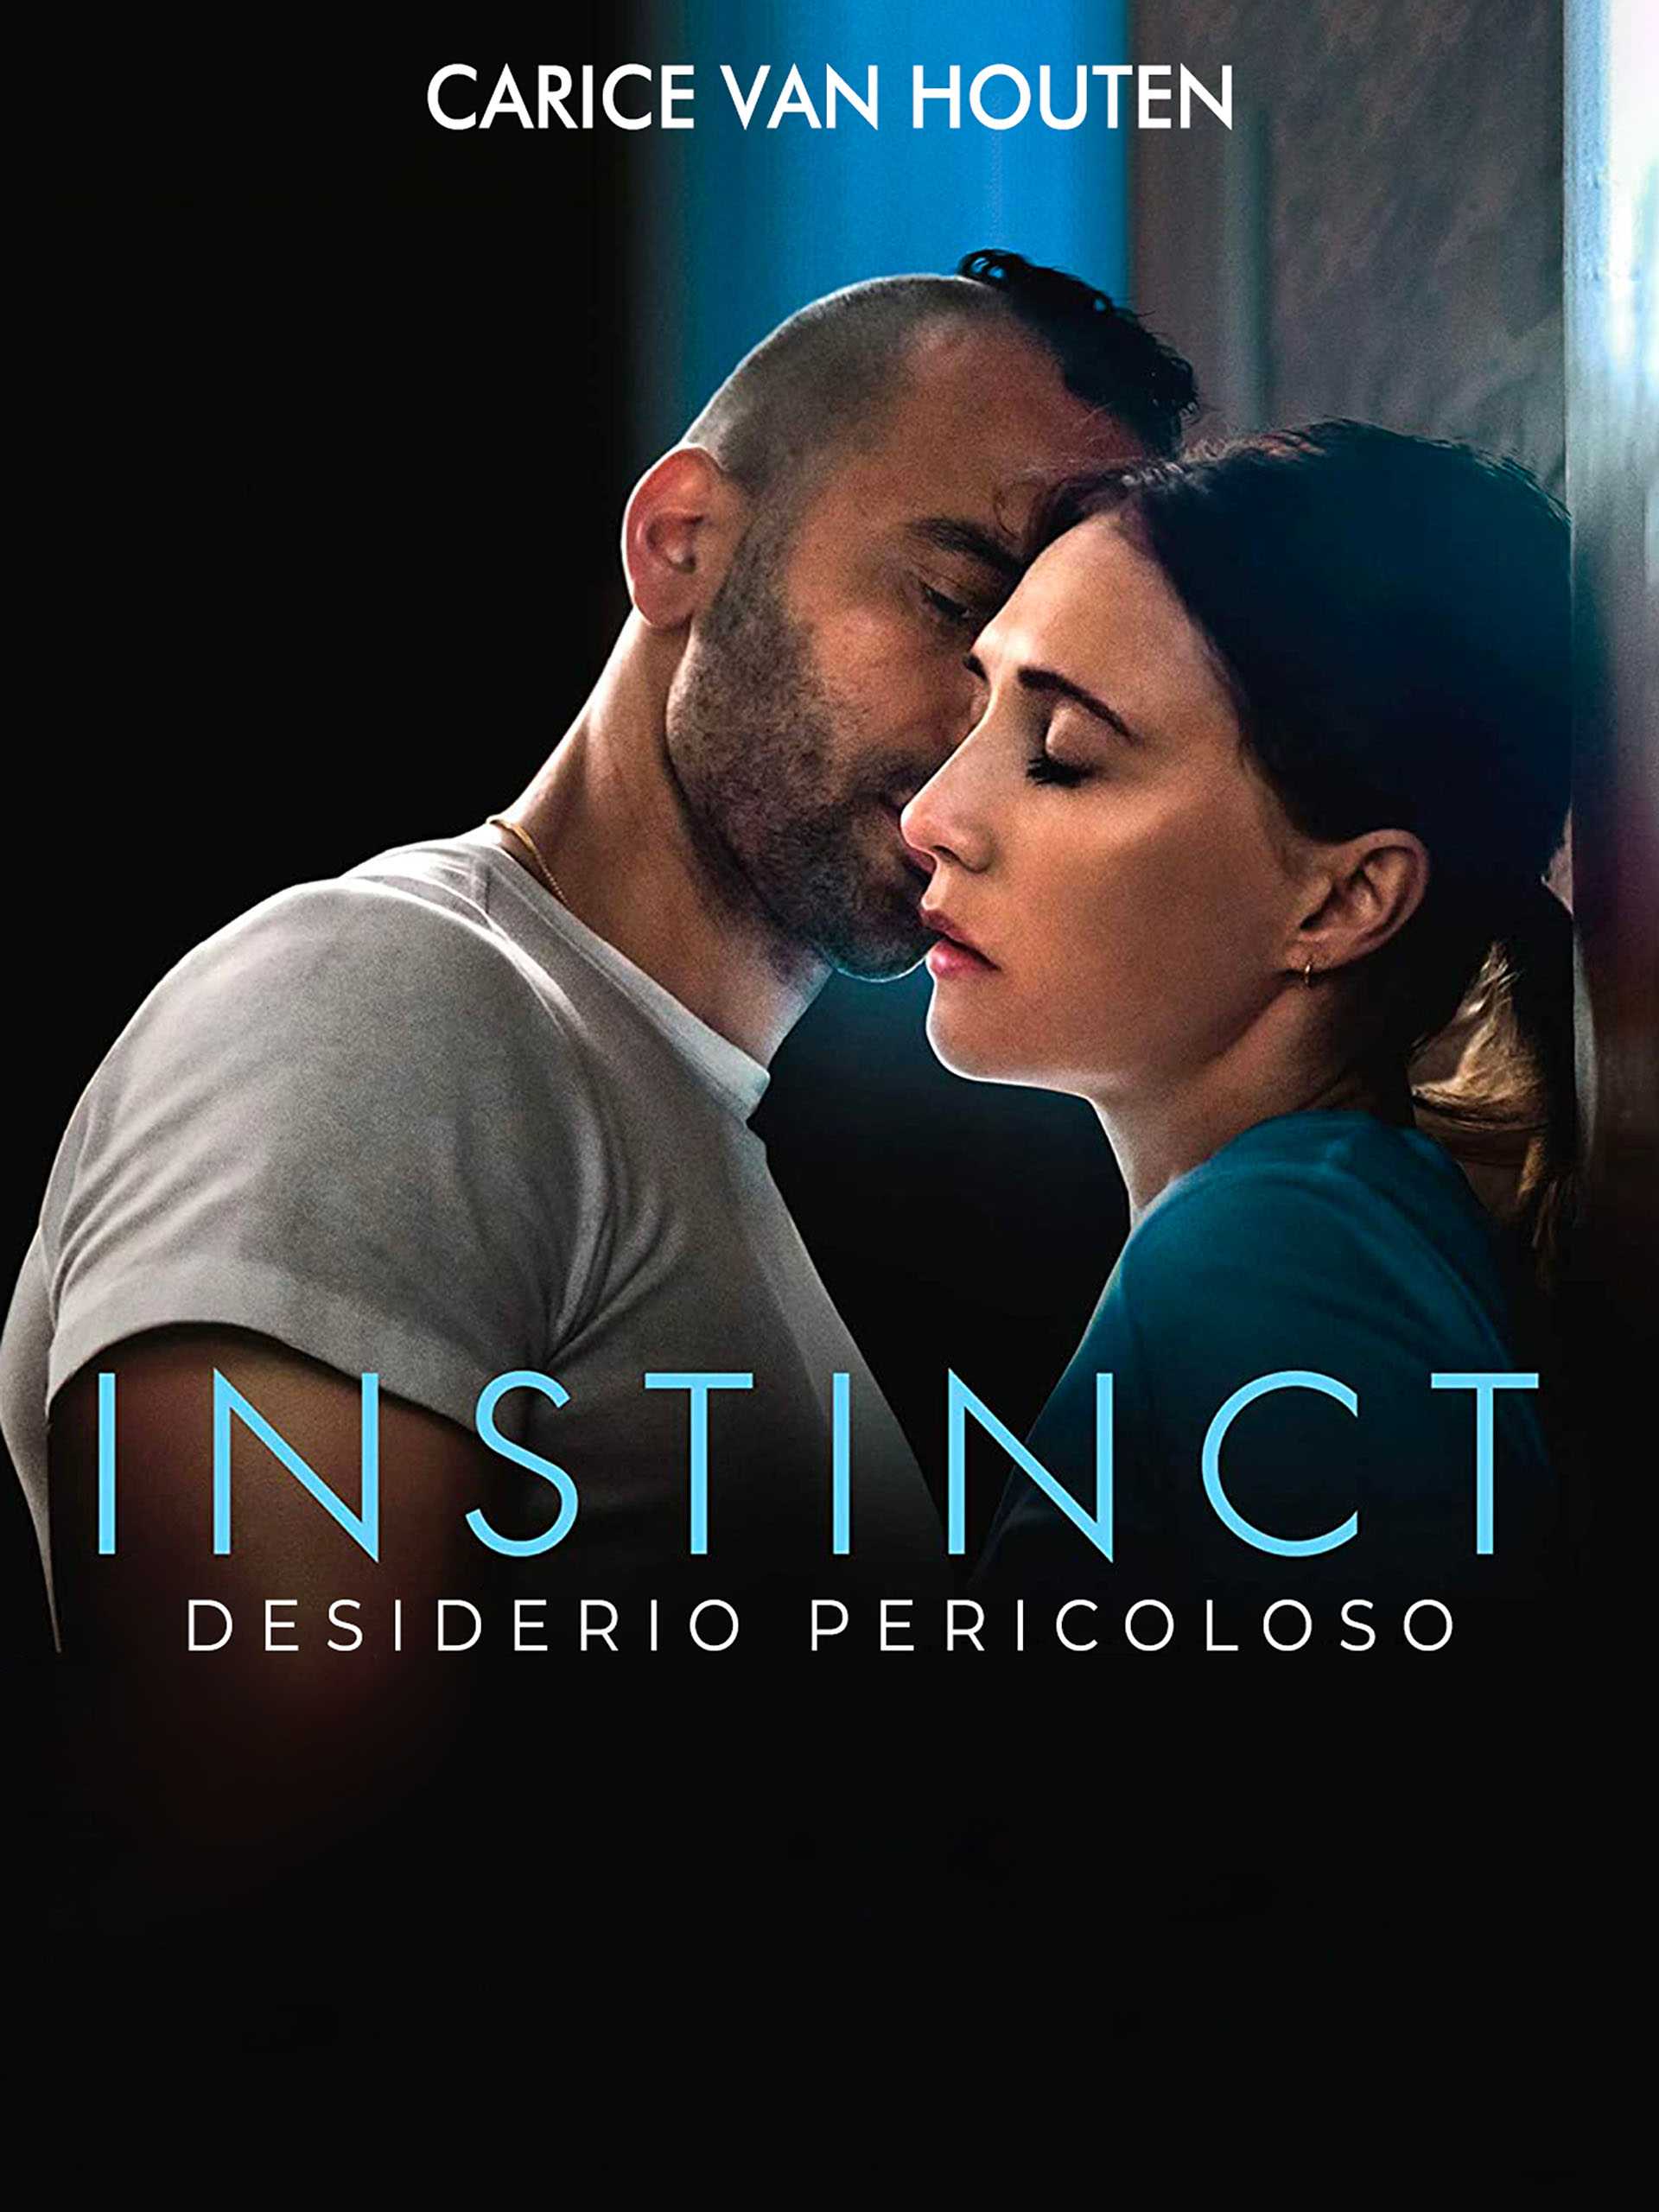 Instinct - Desiderio Pericoloso in streaming